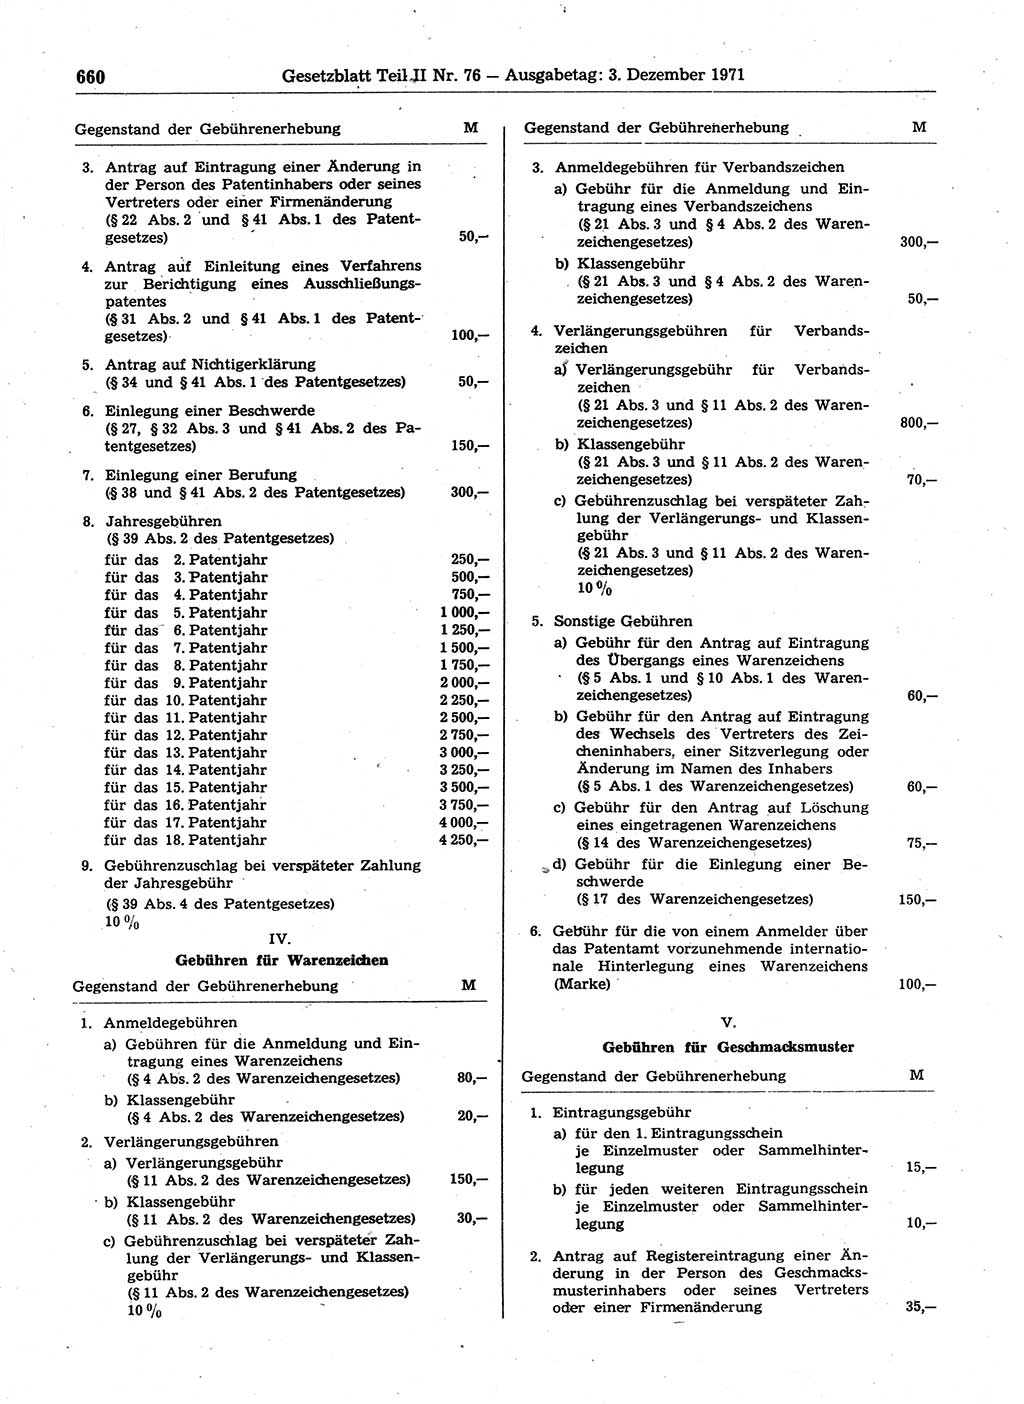 Gesetzblatt (GBl.) der Deutschen Demokratischen Republik (DDR) Teil ⅠⅠ 1971, Seite 660 (GBl. DDR ⅠⅠ 1971, S. 660)